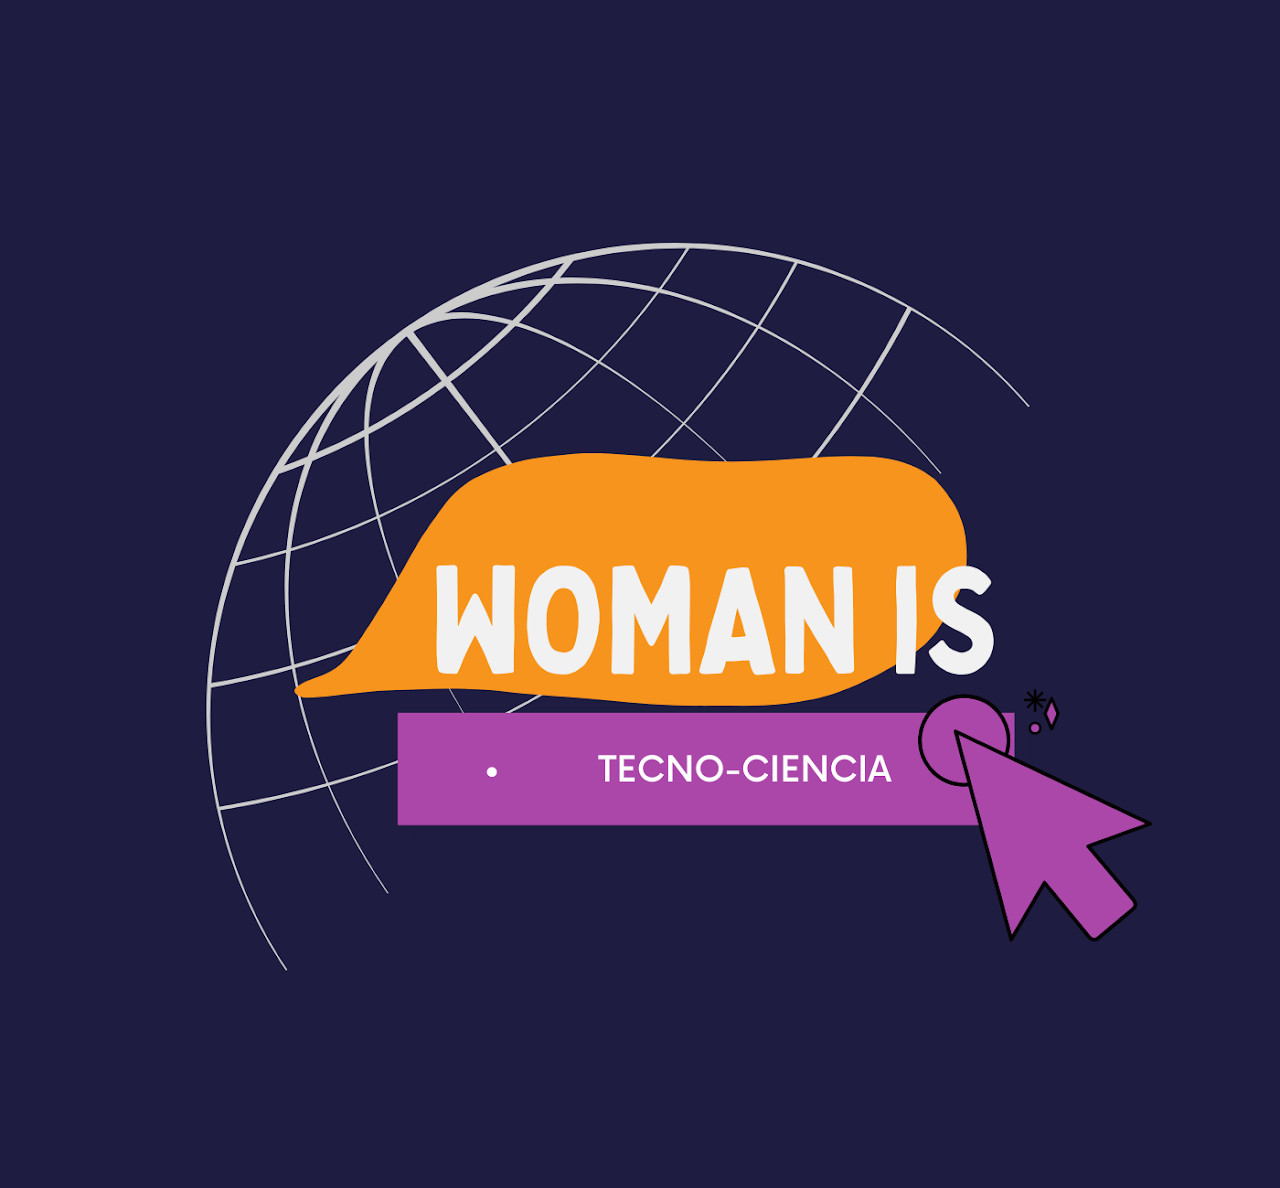 Woman is Tecno-Ciencia